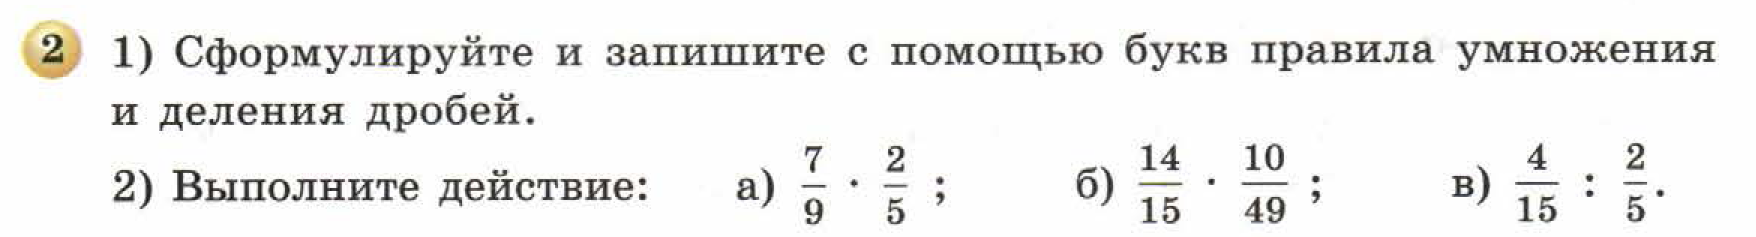 решебник по математике Бунимович 5 класс условие итоги главы 9 задание 2